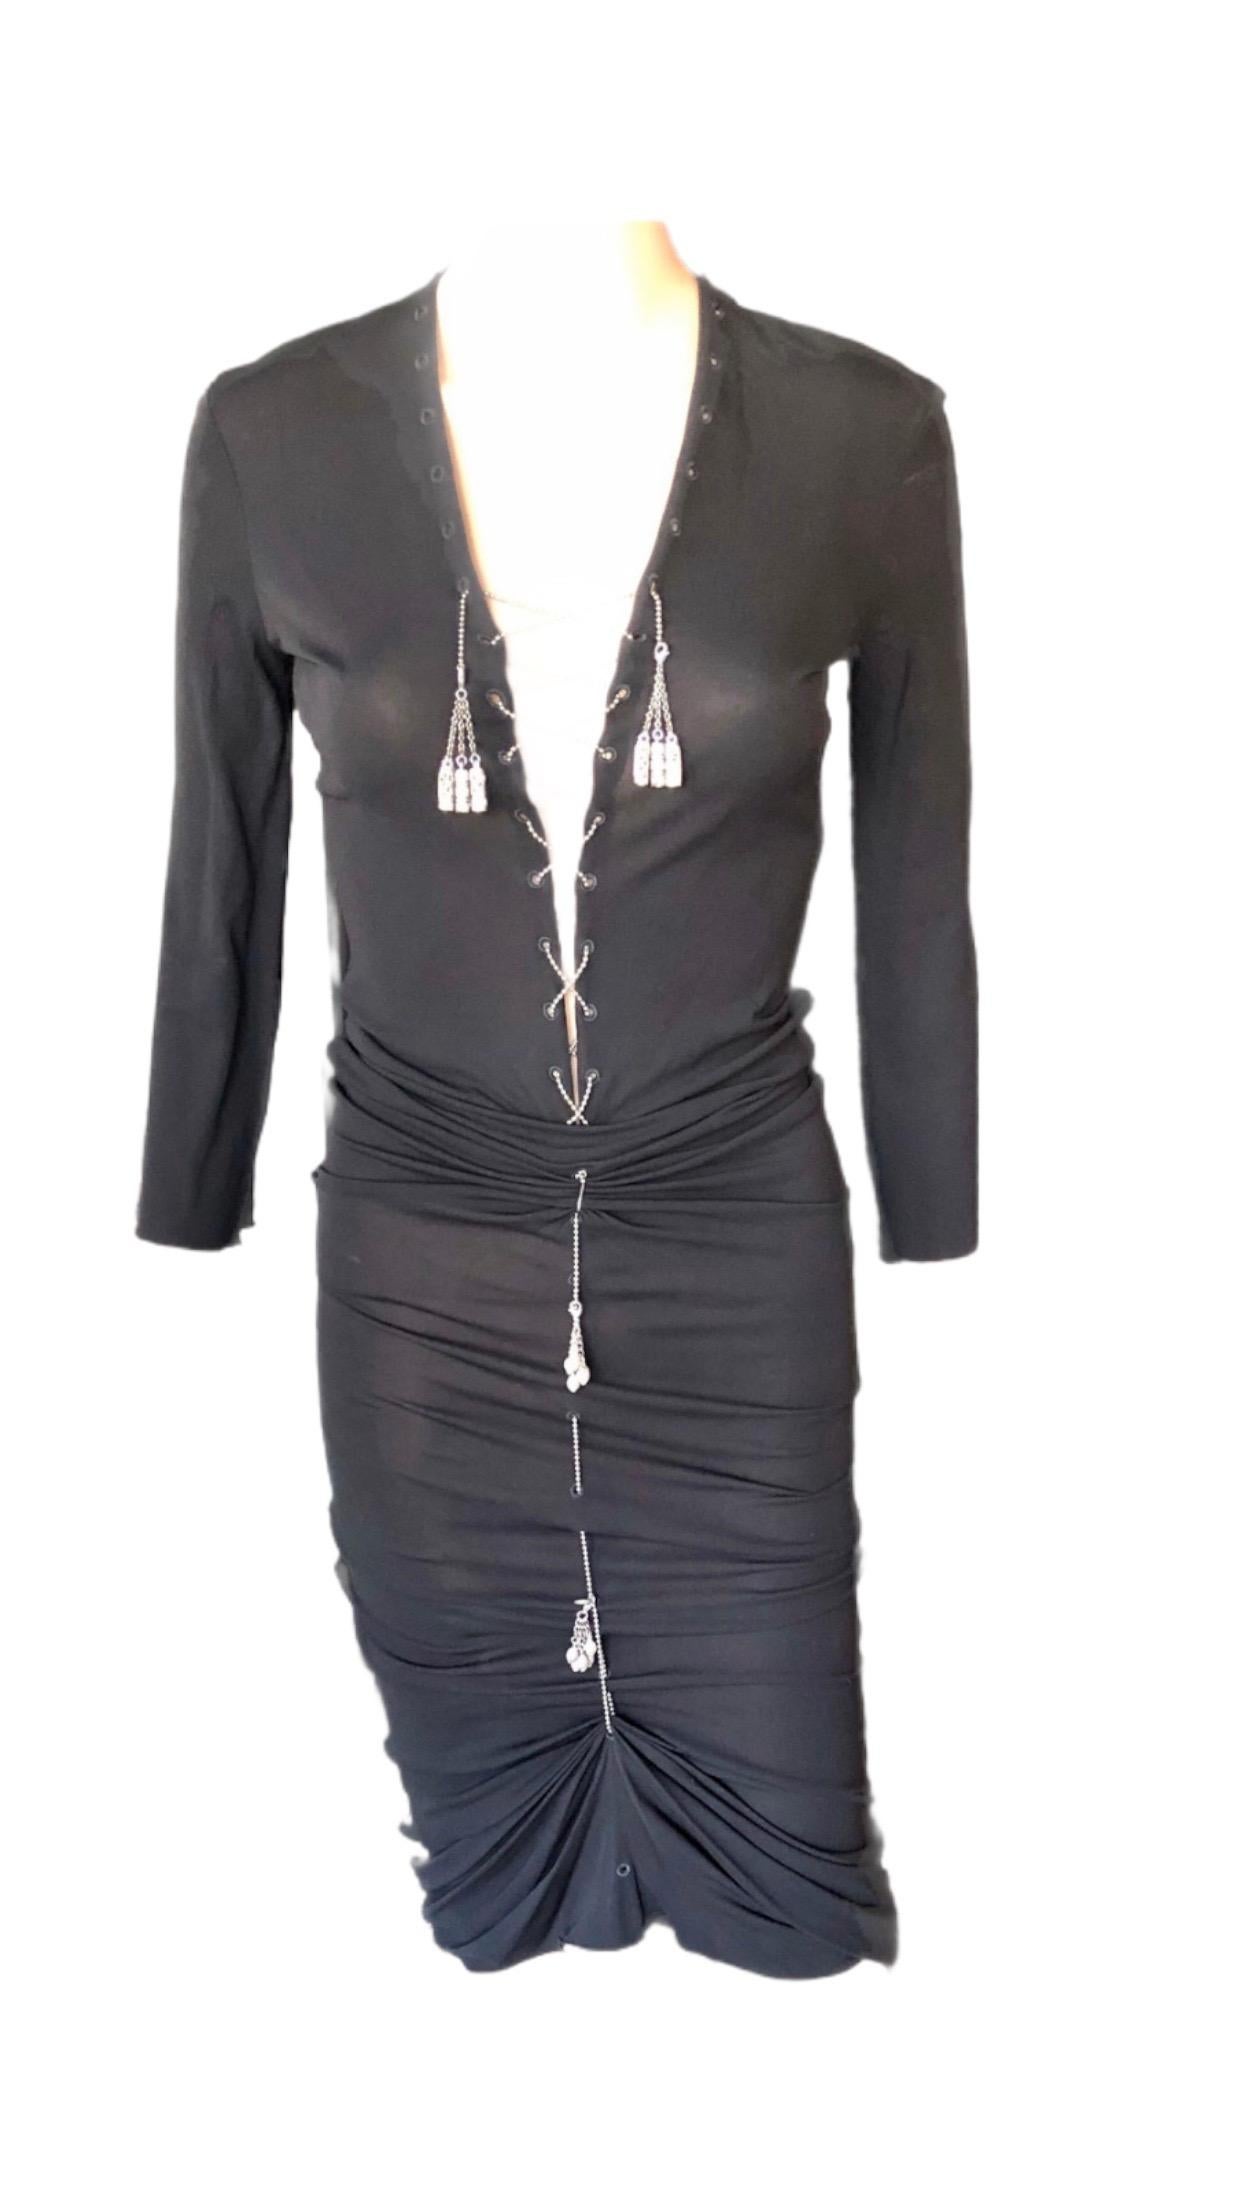 Jean Paul Gaultier 1990's Semi-Sheer Lace Up Metal Chain Embellished Black Knit Dress IT 42

Robe longue Jean Paul Gaultier avec encolure en V, ornée de chaînes en métal argenté et de pompons sur le devant et manches longues.